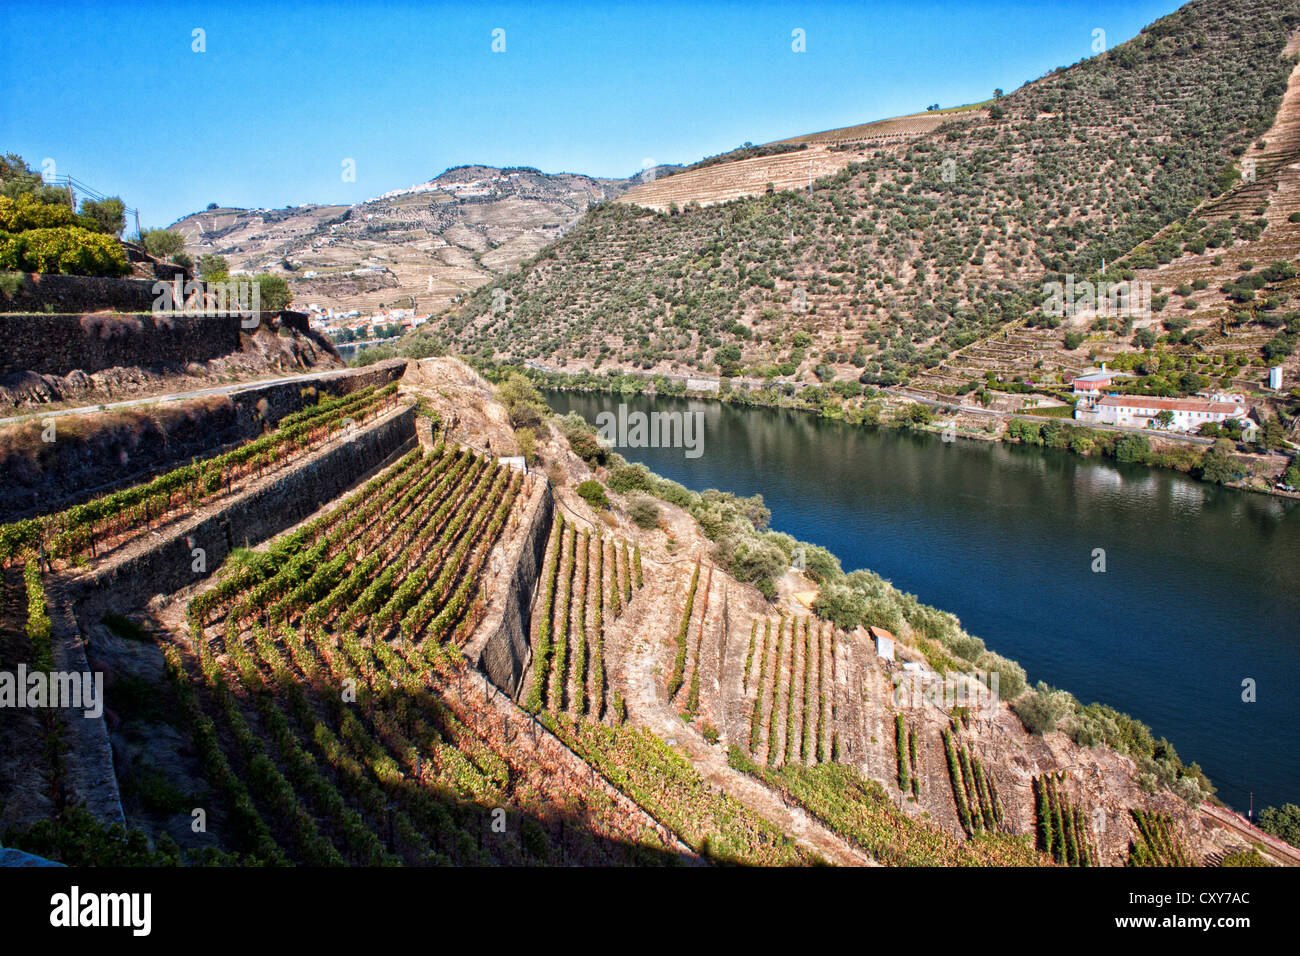 Paysage de la région du Douro au cours de la récolte. La région de Porto, au nord du Portugal. C'est considéré comme patrimoine mondial de l'Unesco Banque D'Images